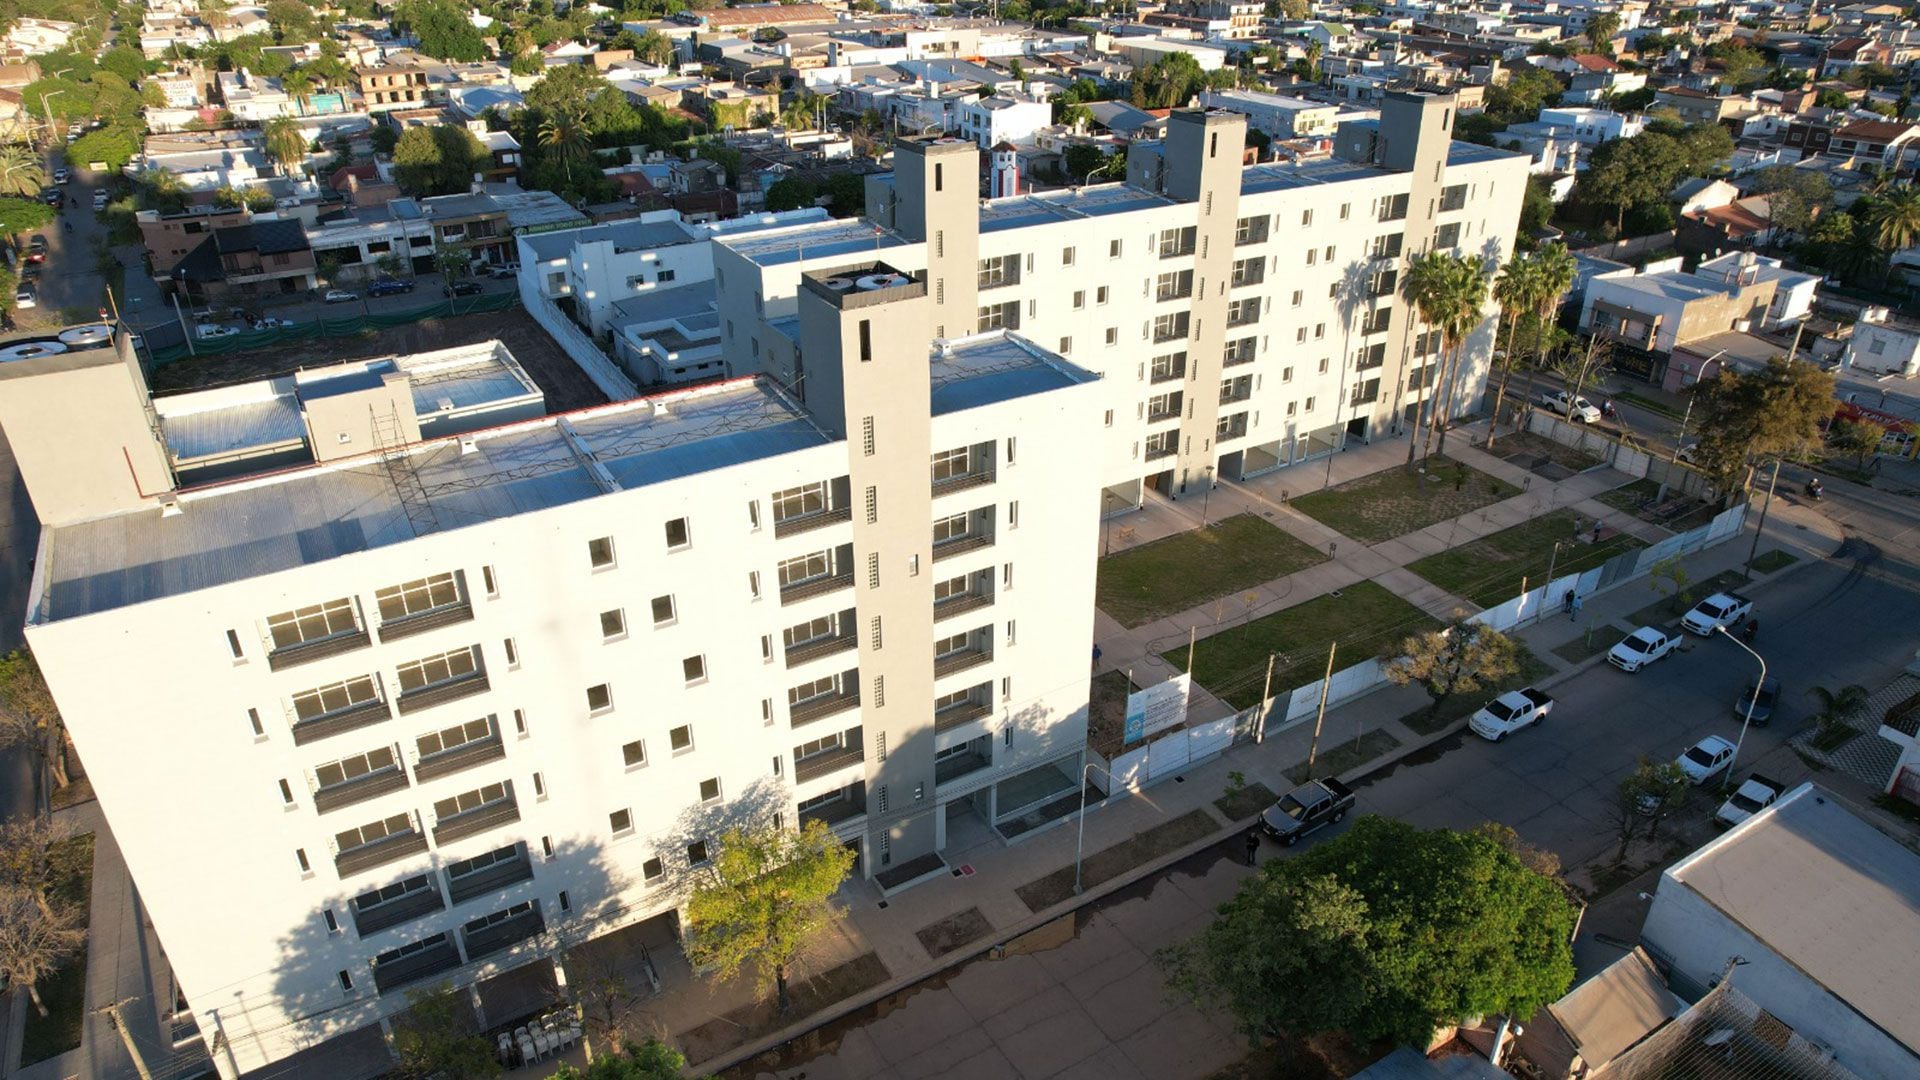 Desarrollo Urbanístico ubicado en la ciudad de Roque Sáenz Peña, provincia del Chaco, a escasas cuadras del centro. Con departamentos de 3 y 4 ambientes